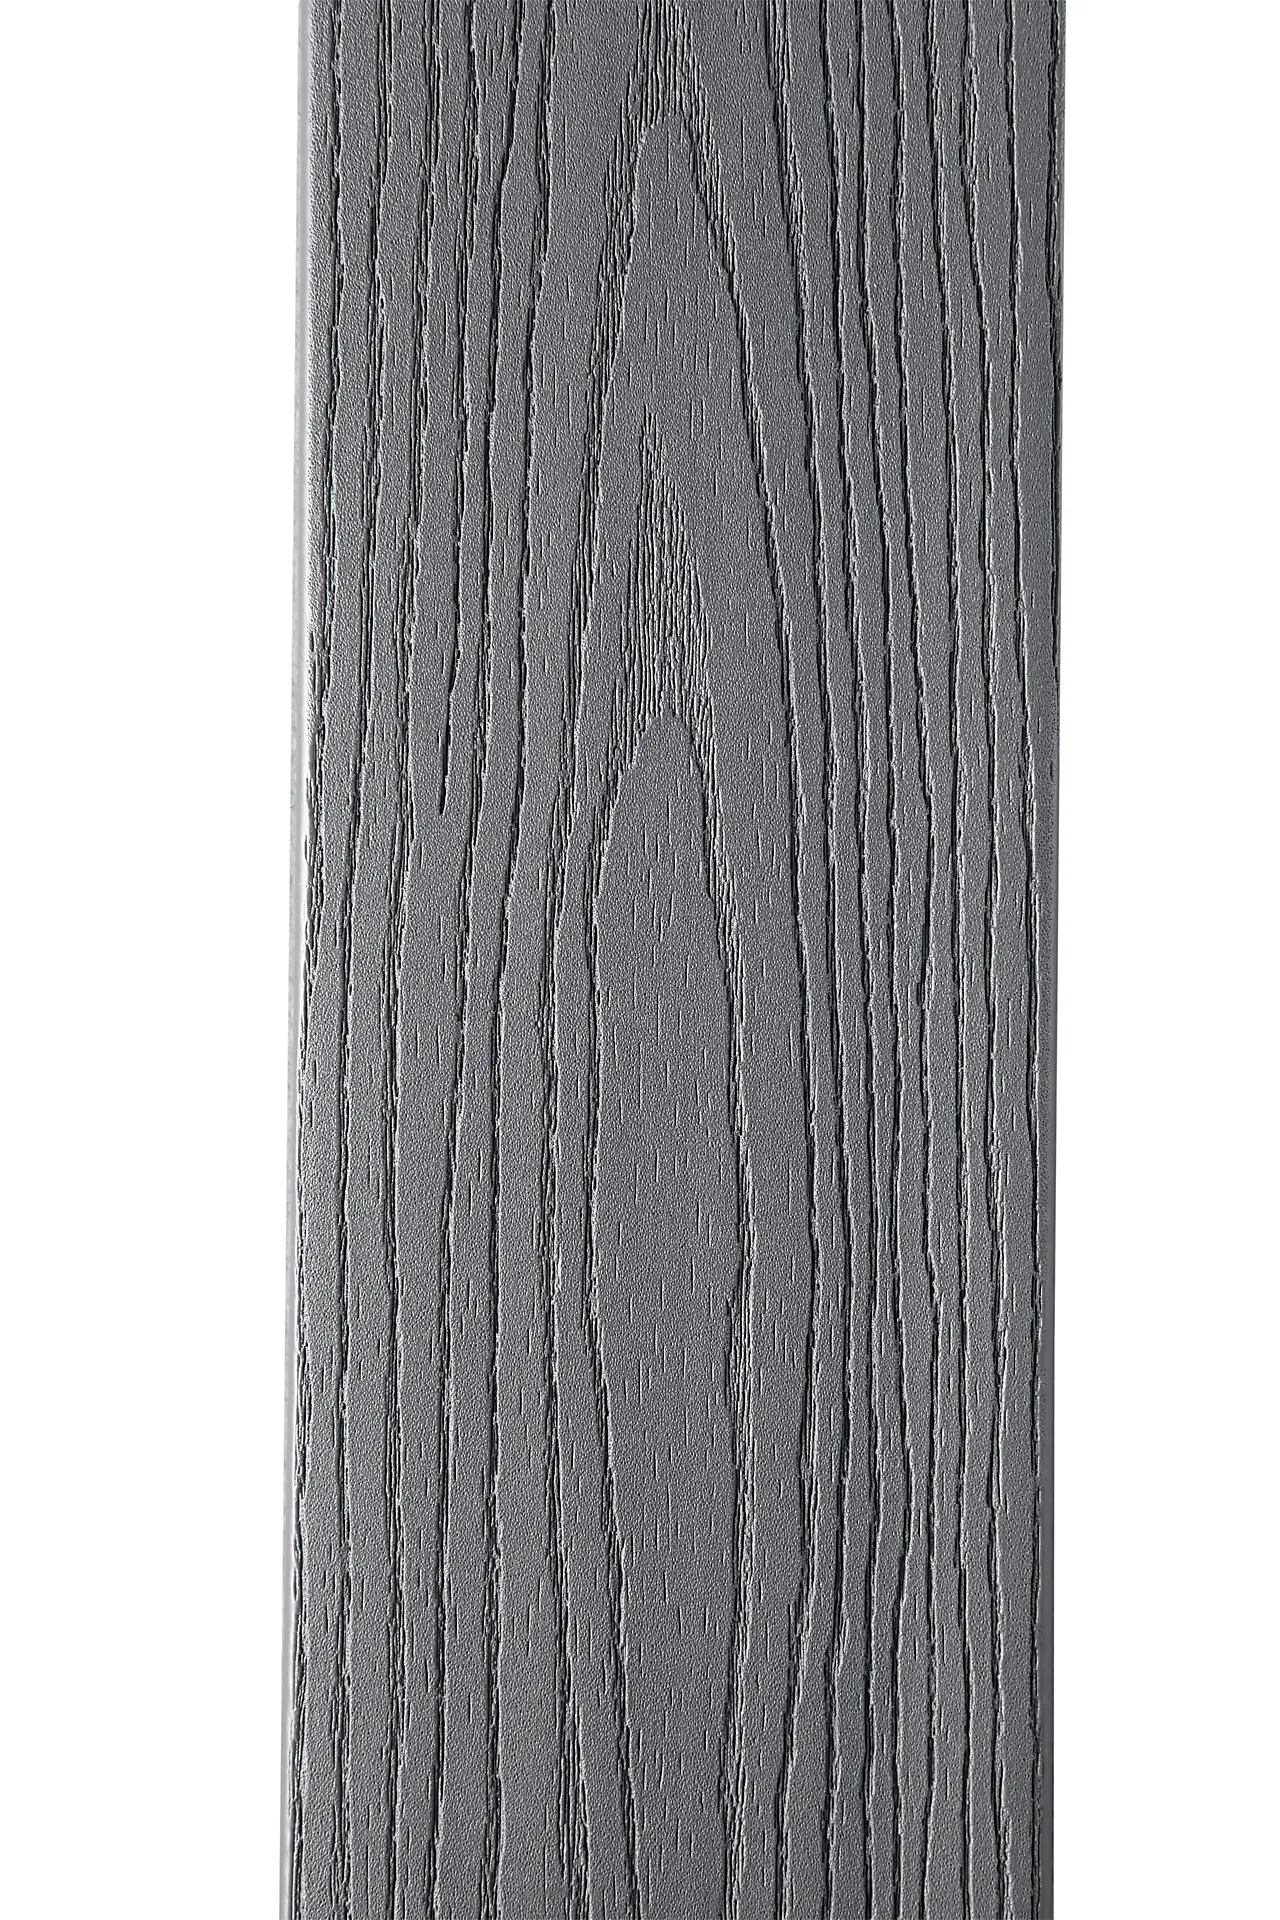 Kompositt terrassebord grå 24x137x4880 mm null - null - 5